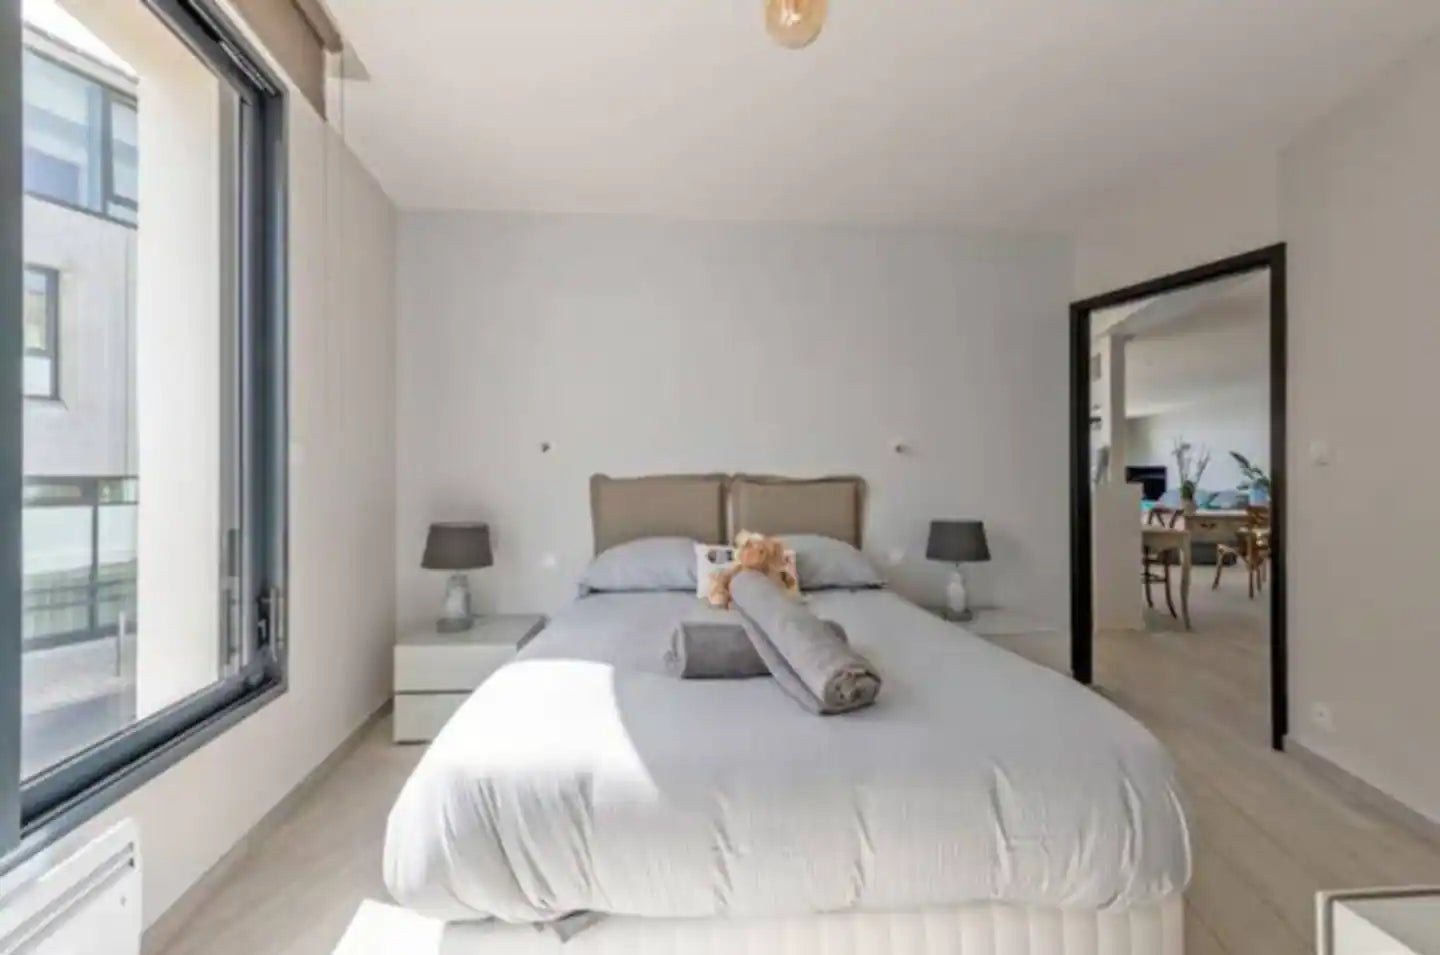 Magnifique loft au Conquet avec vue mer - Location airbnb Bretagne - Résidence BNB